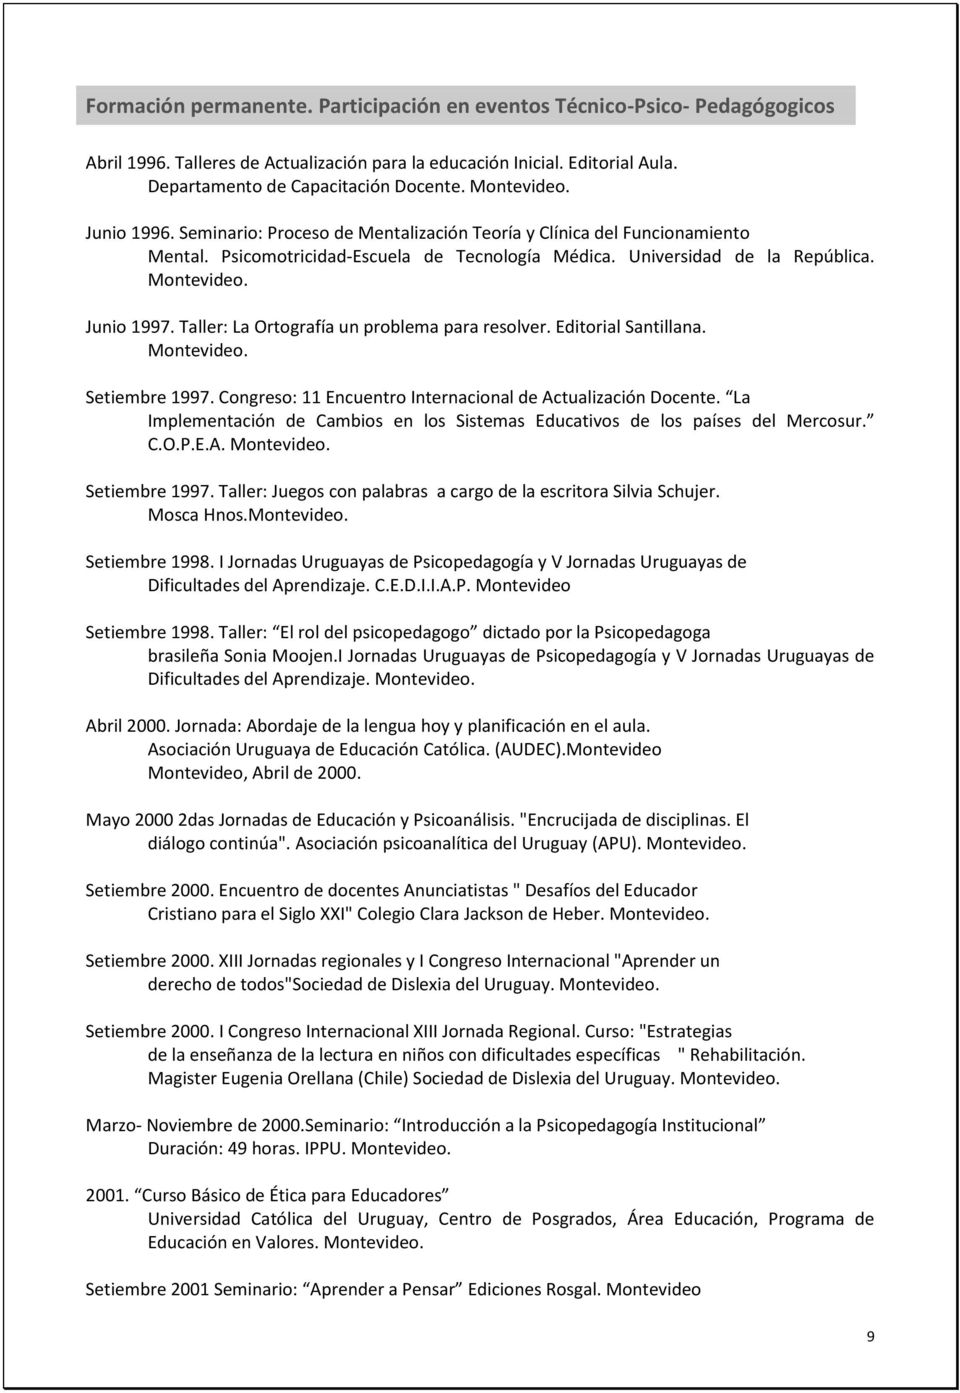 Taller: La Ortografía un problema para resolver. Editorial Santillana. Setiembre 1997. Congreso: 11 Encuentro Internacional de Actualización Docente.